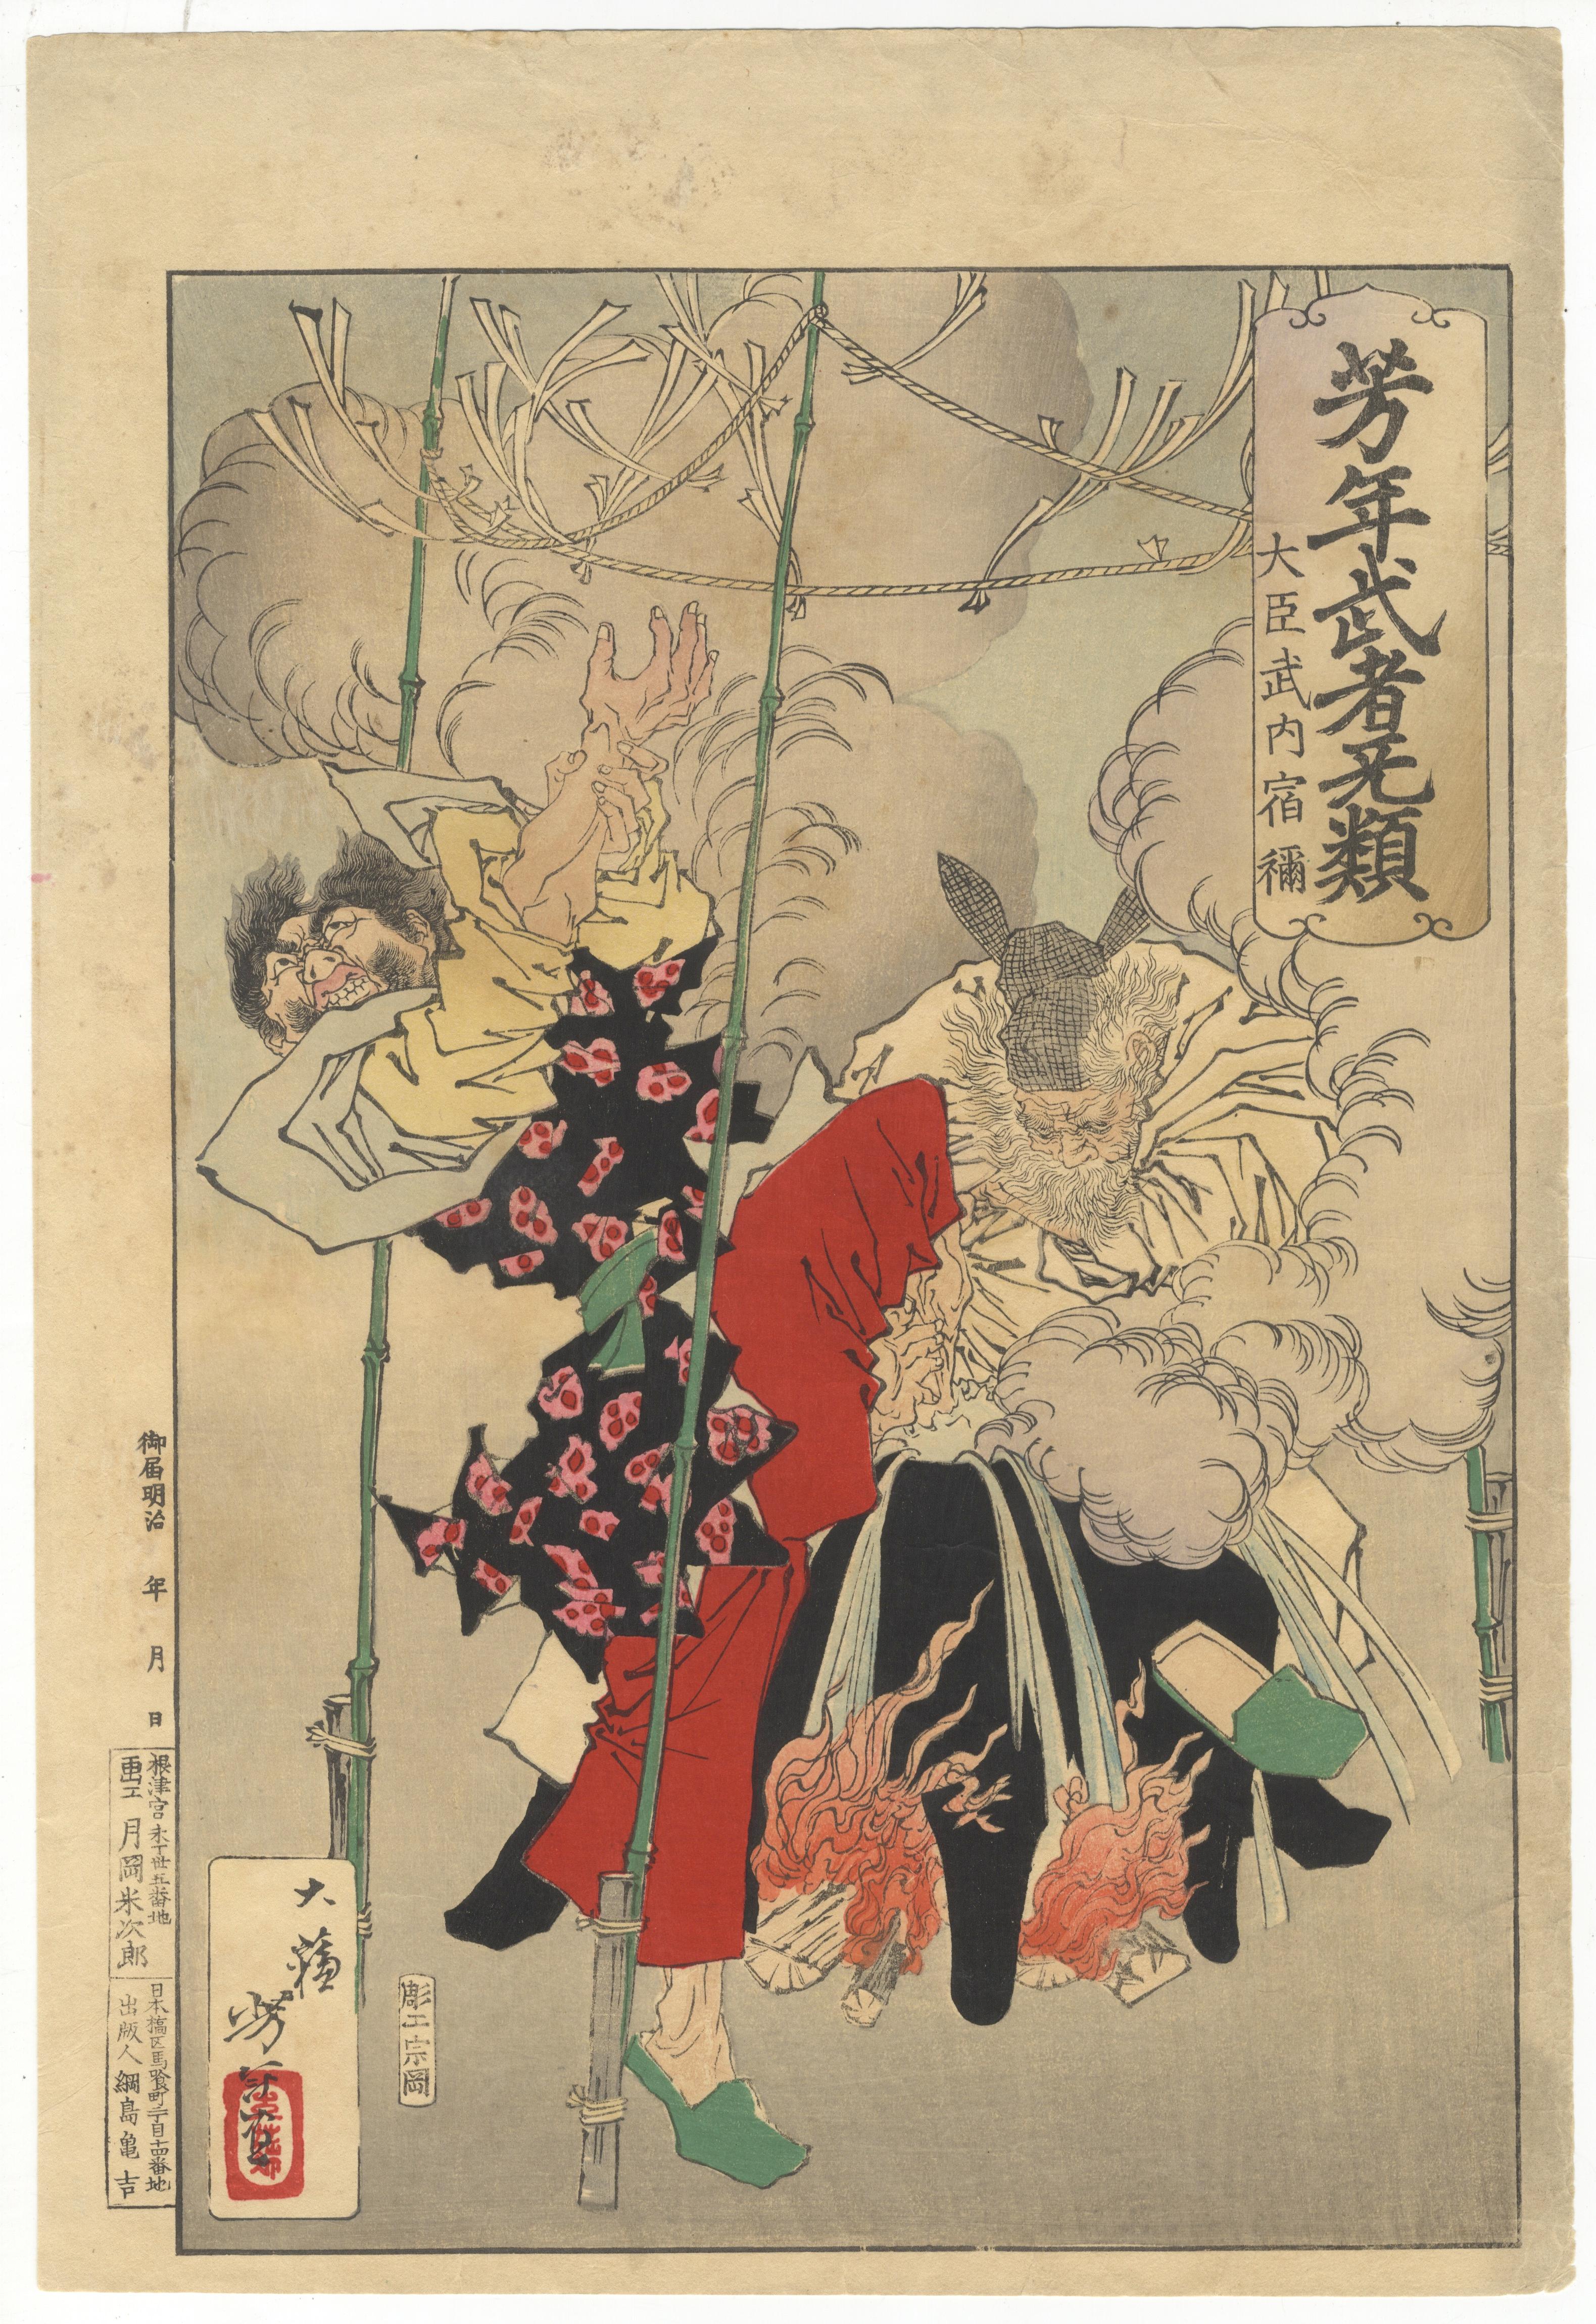 Yoshitoshi (Tsukioka Kinzaburo) Portrait Print - Yoshitoshi Tsukioka, Original Japanese Woodblock Print, Folklore, Ukiyo-e Legend